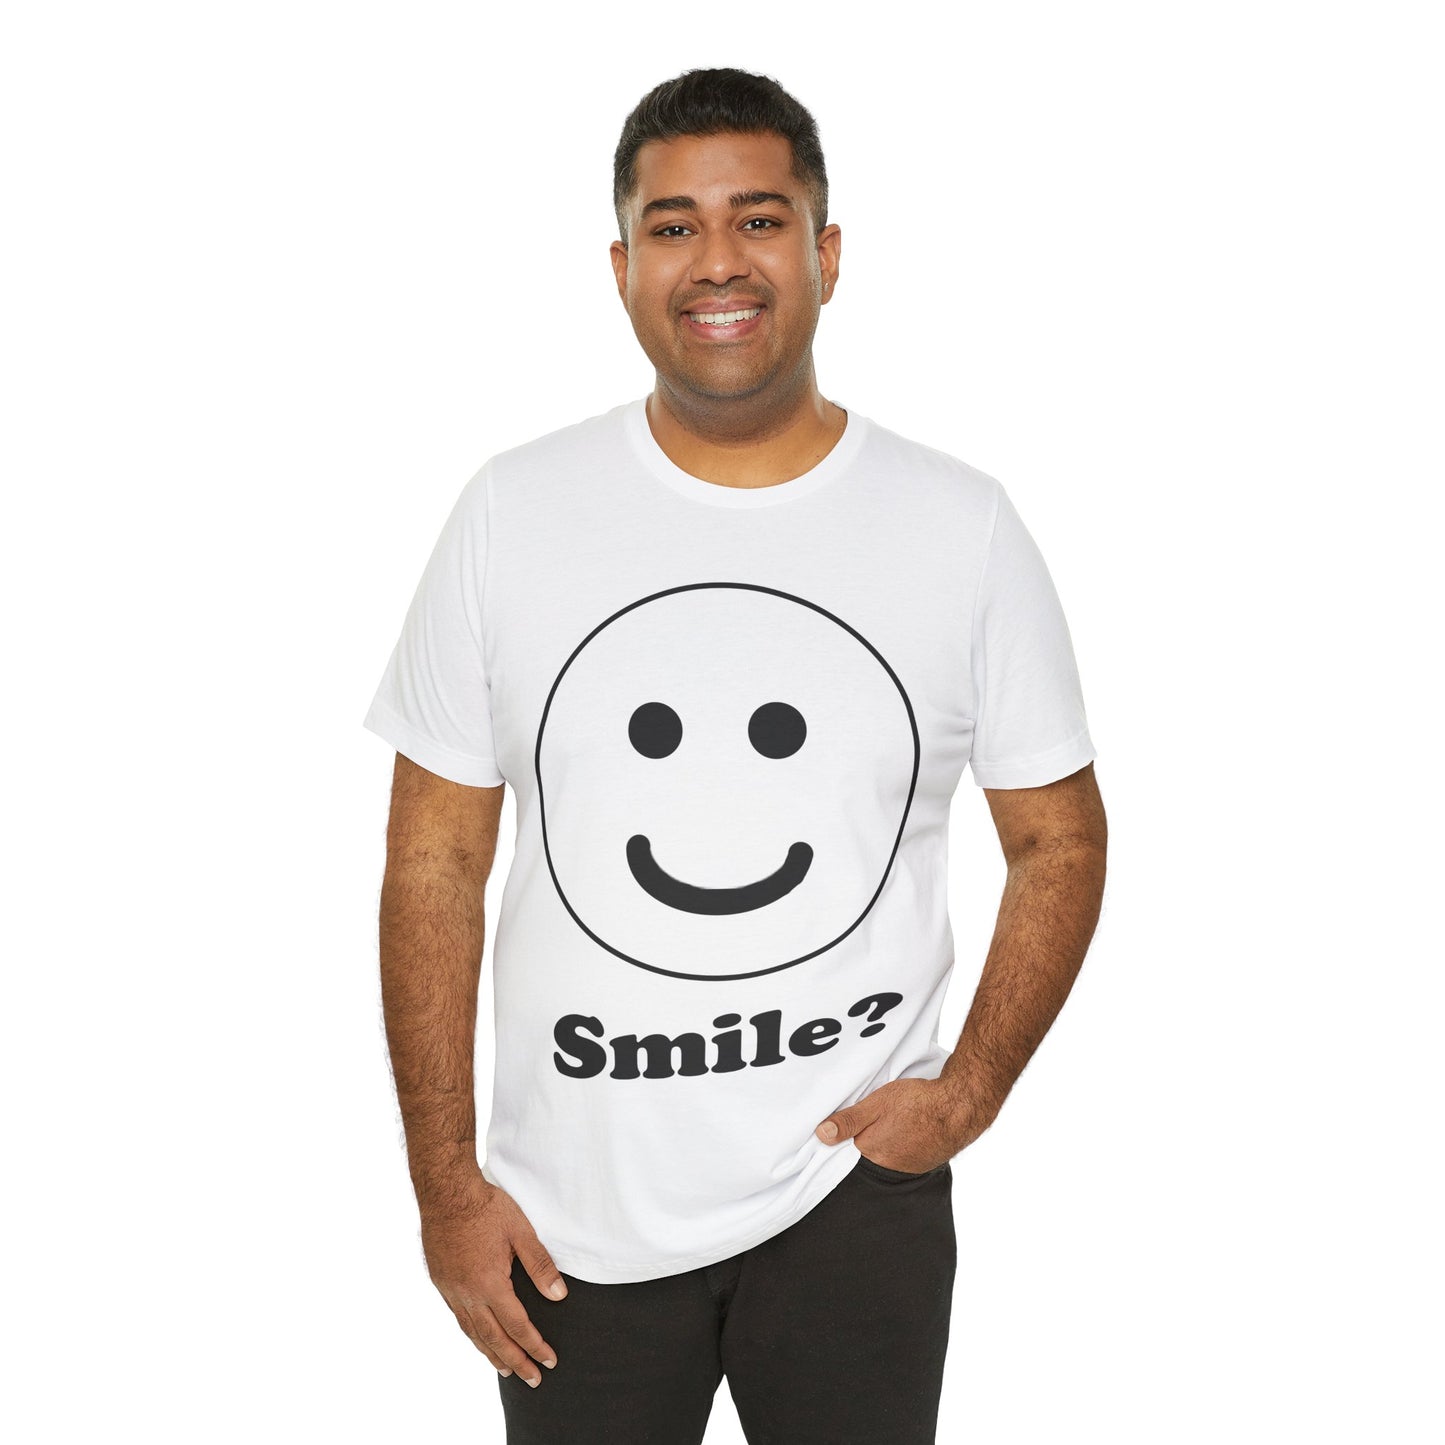 Smile? Unisex Jersey Short Sleeve Tee